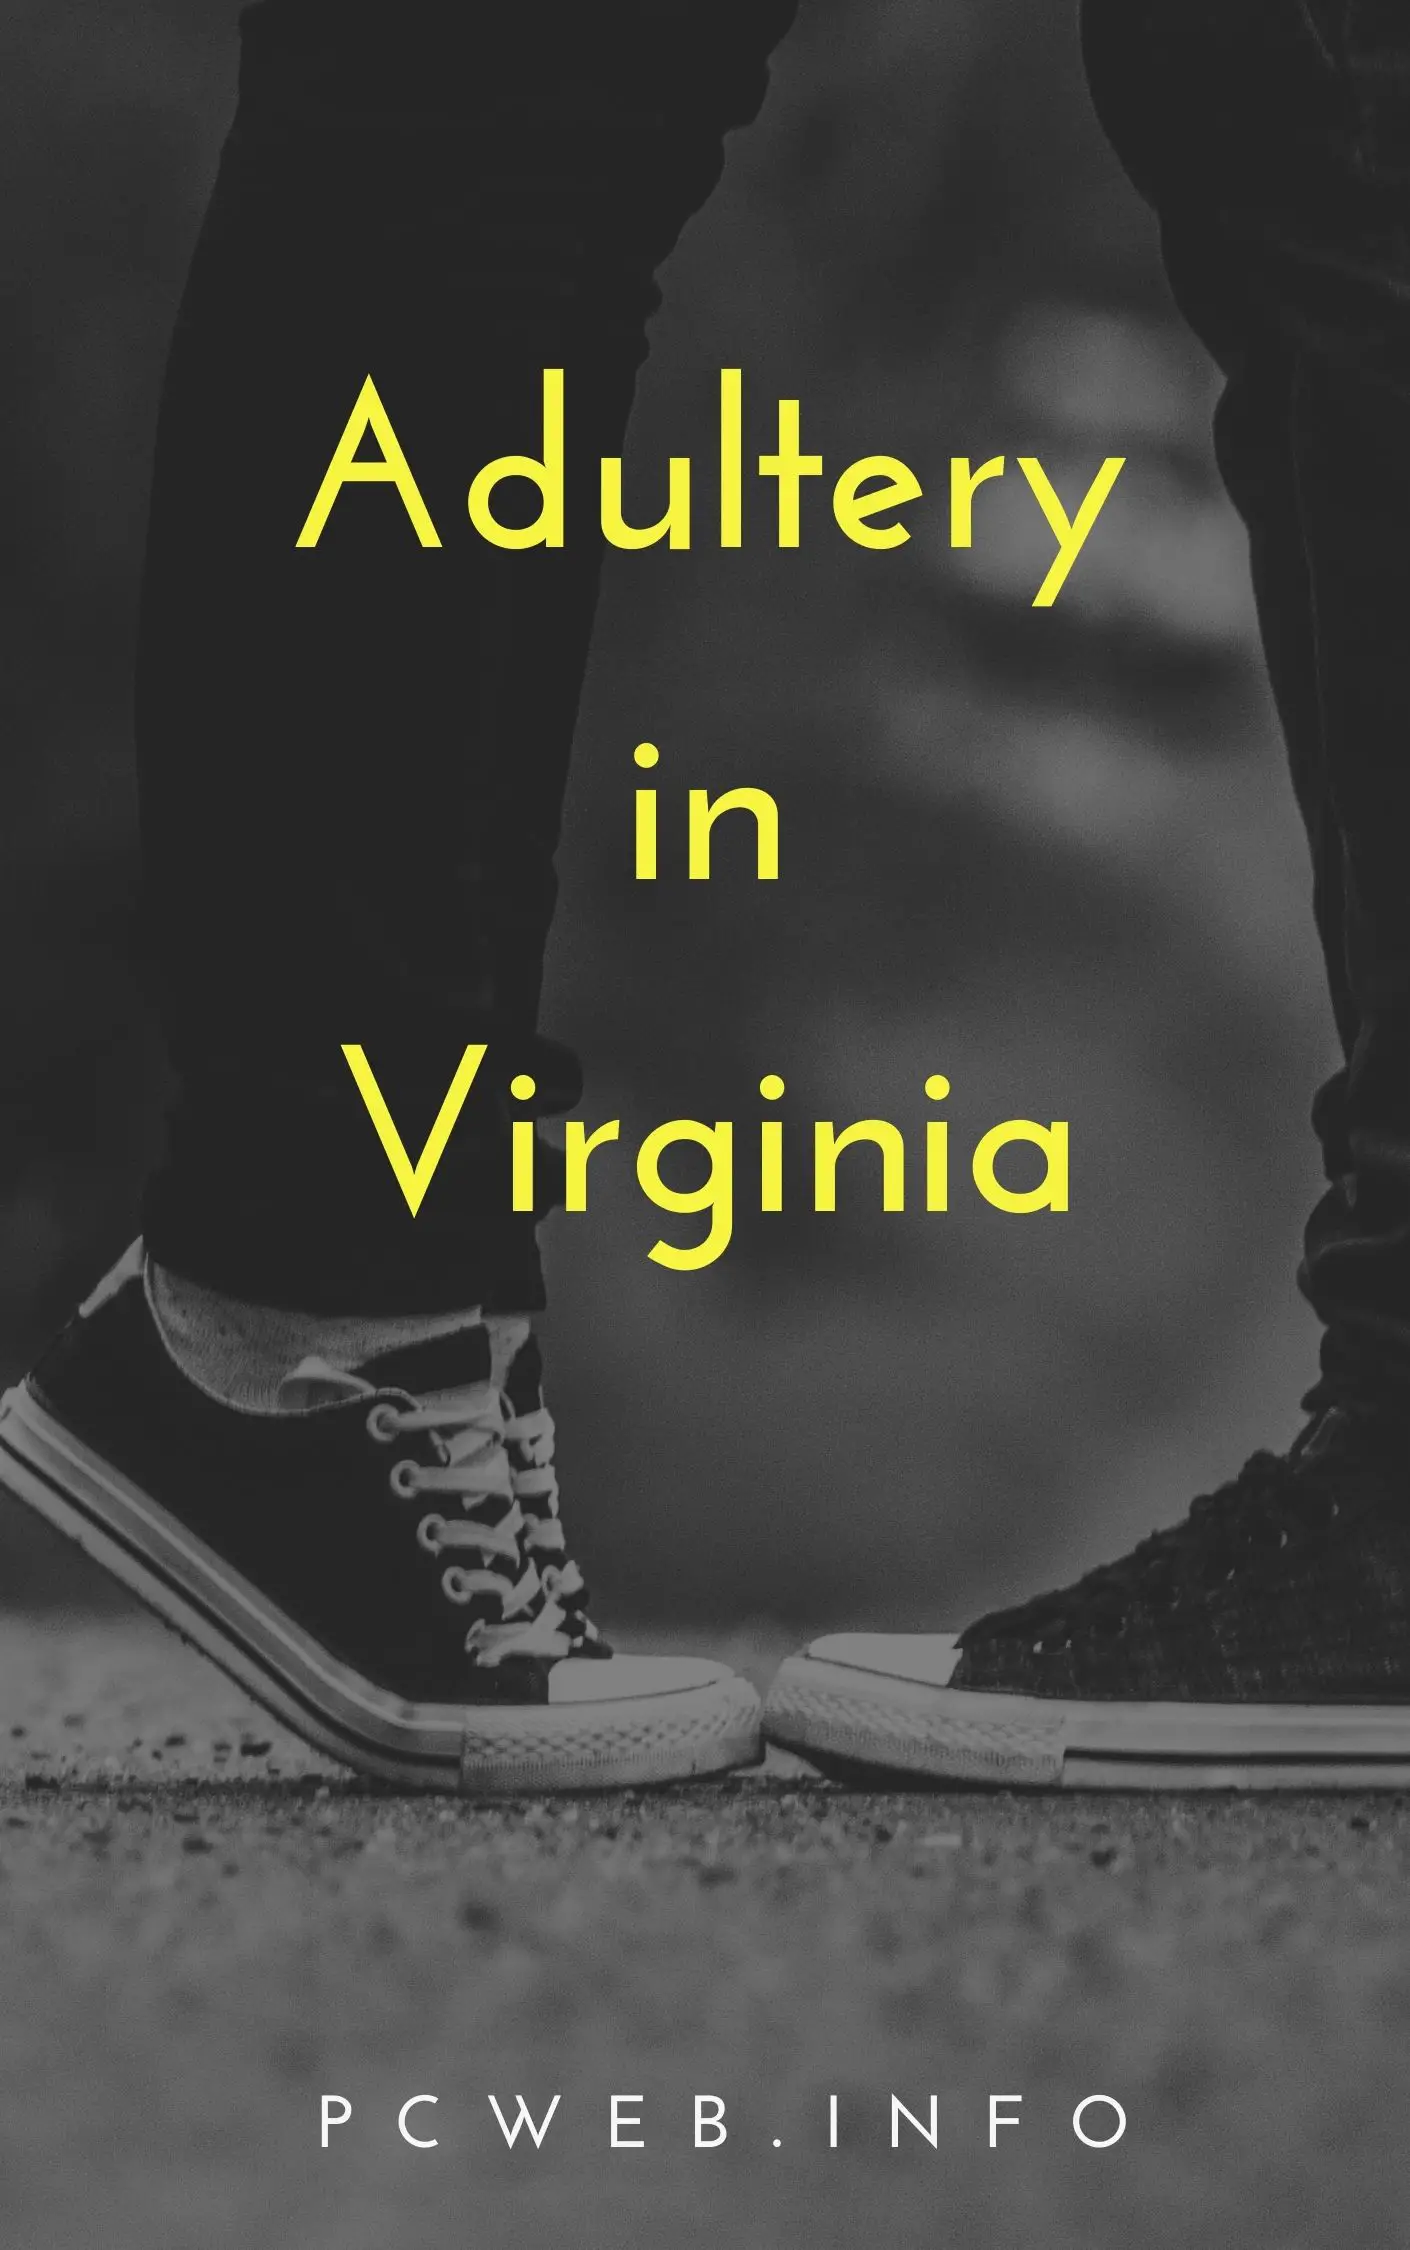 Adulterio en Virginia: ¿Qué se considera adulterio en Virginia? Pena por adulterio en Virginia. Cargos de adulterio en Virginia. ¿Cómo afecta el adulterio los casos de divorcio?